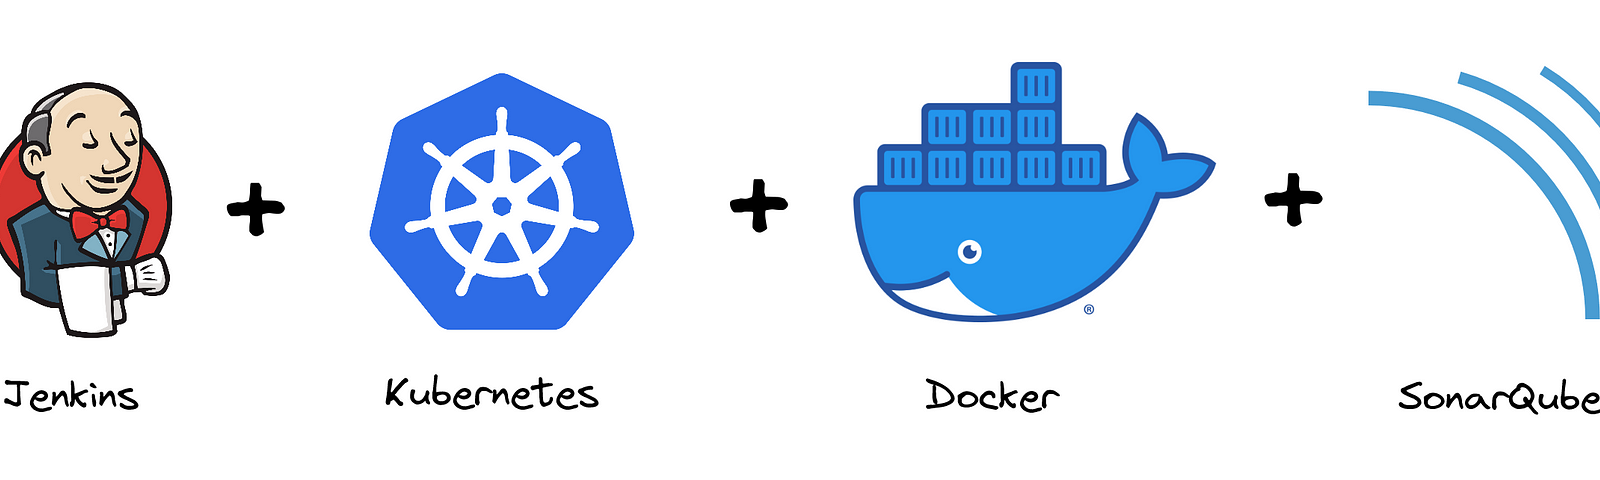 Logos of Jenkins, Kubernetes, Docker and SonarQube